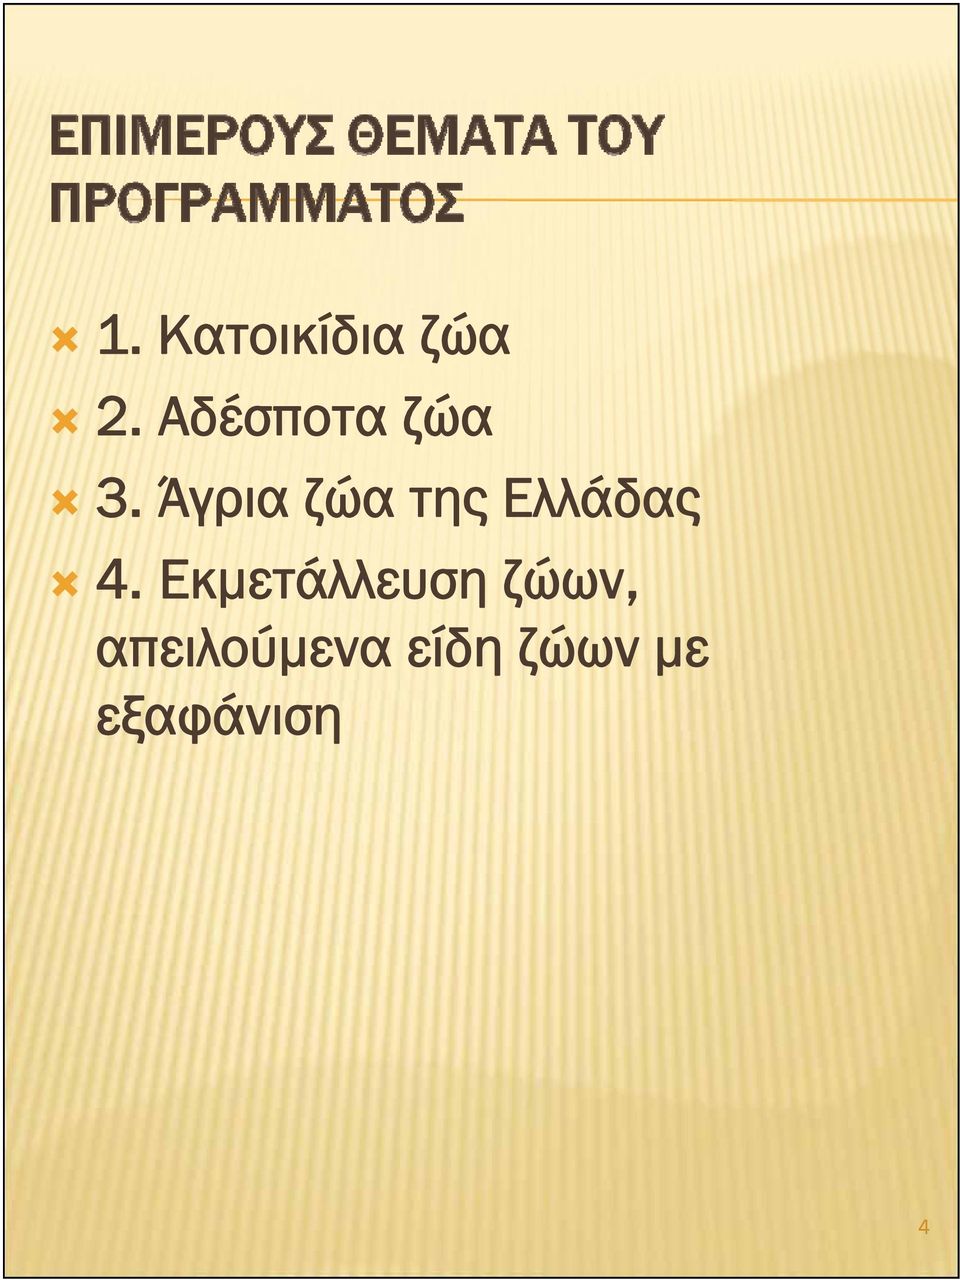 Άγρια ζώα της Ελλάδας 4.